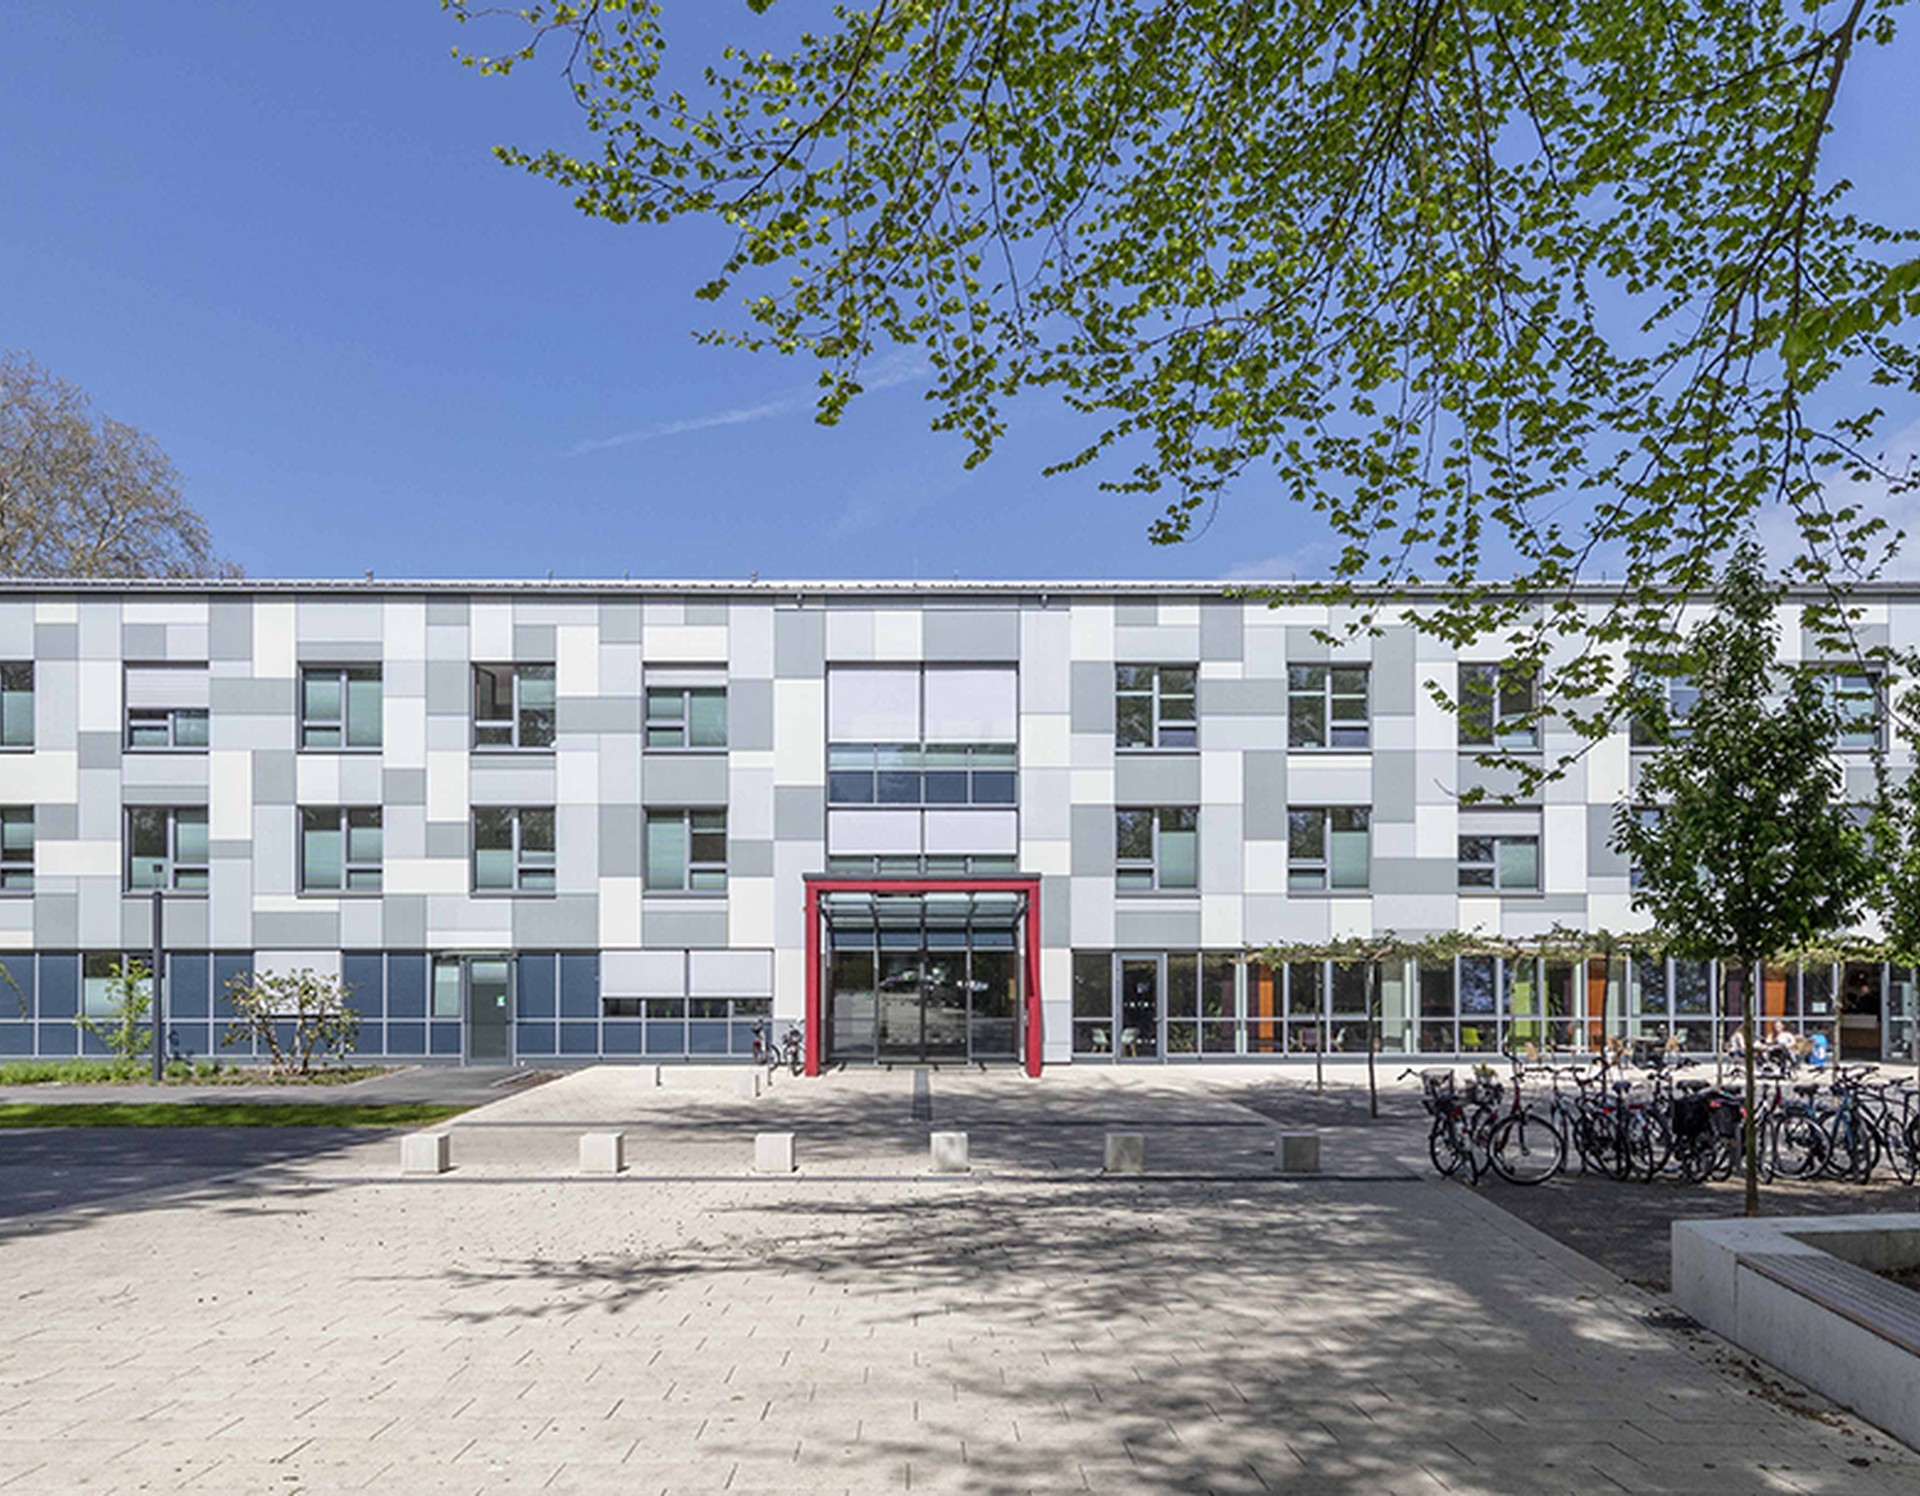 Das weiße, moderne Hauptgebäude der Klinik, roter Türrahmen im Eingangsbereich, viele Fahrräder vor dem Gebäude